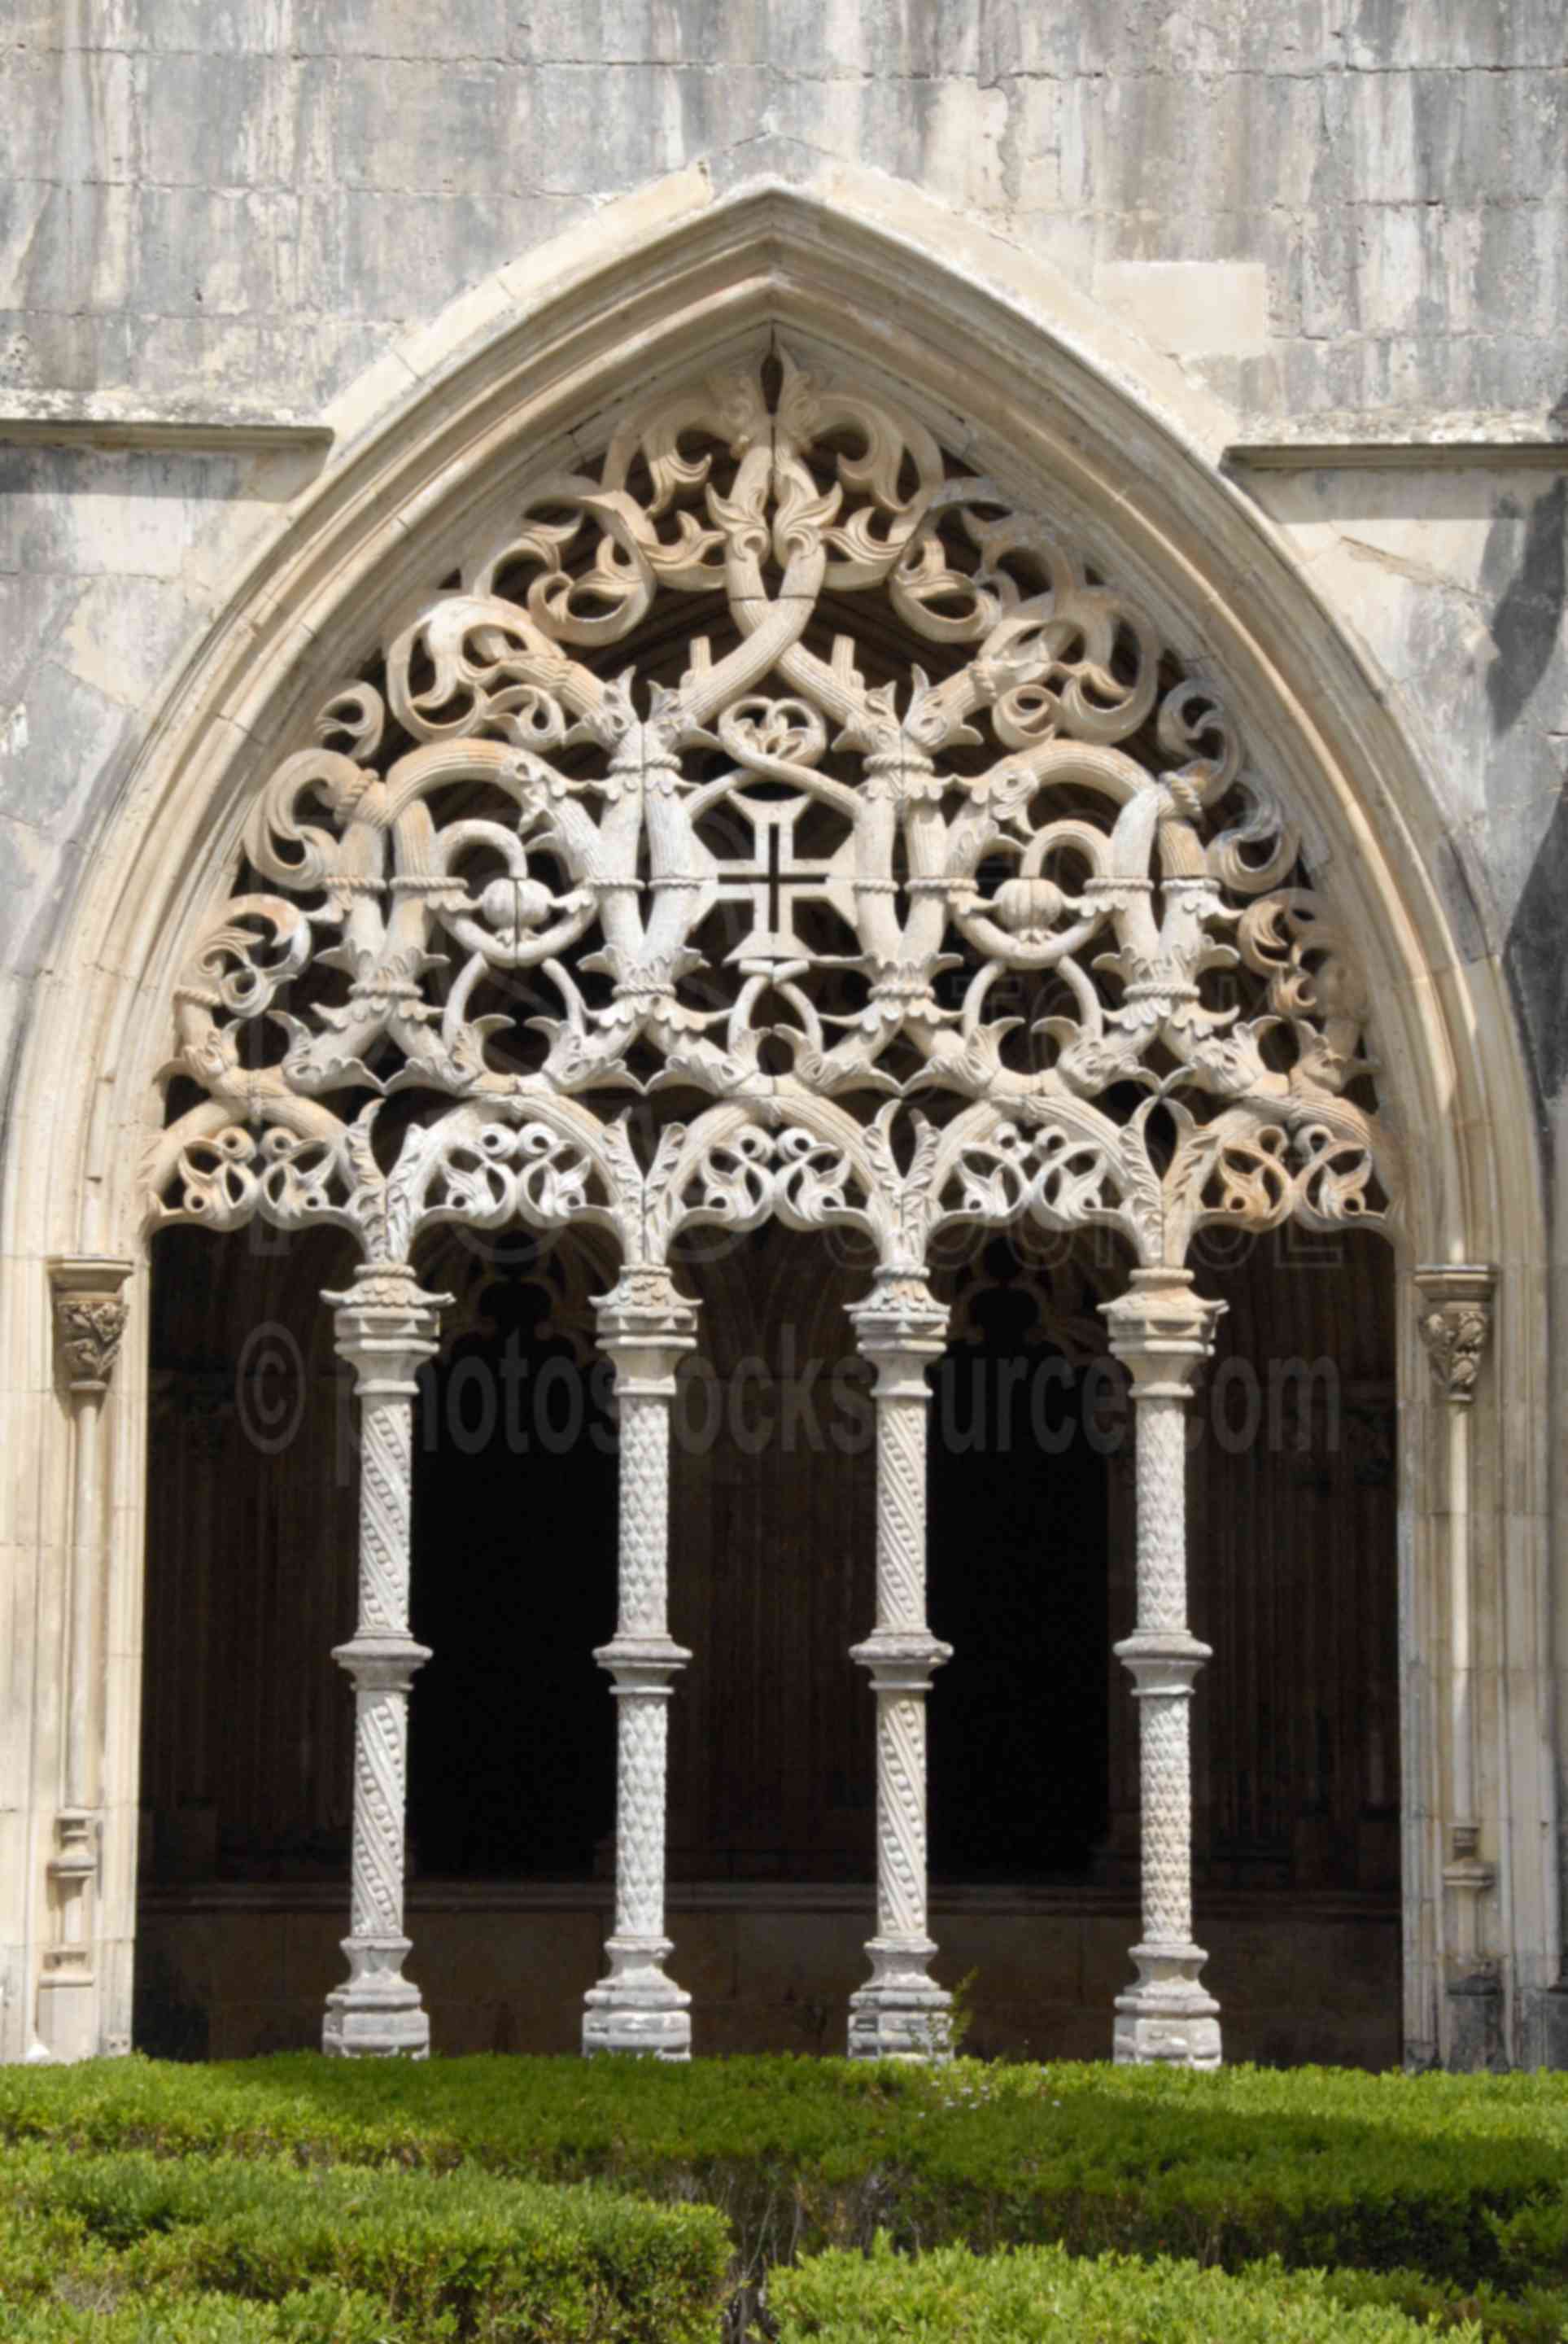 Cloisters Windows,mosterio de santa maria da vitoria,cathedral,architecture,cloisters,churches,religion